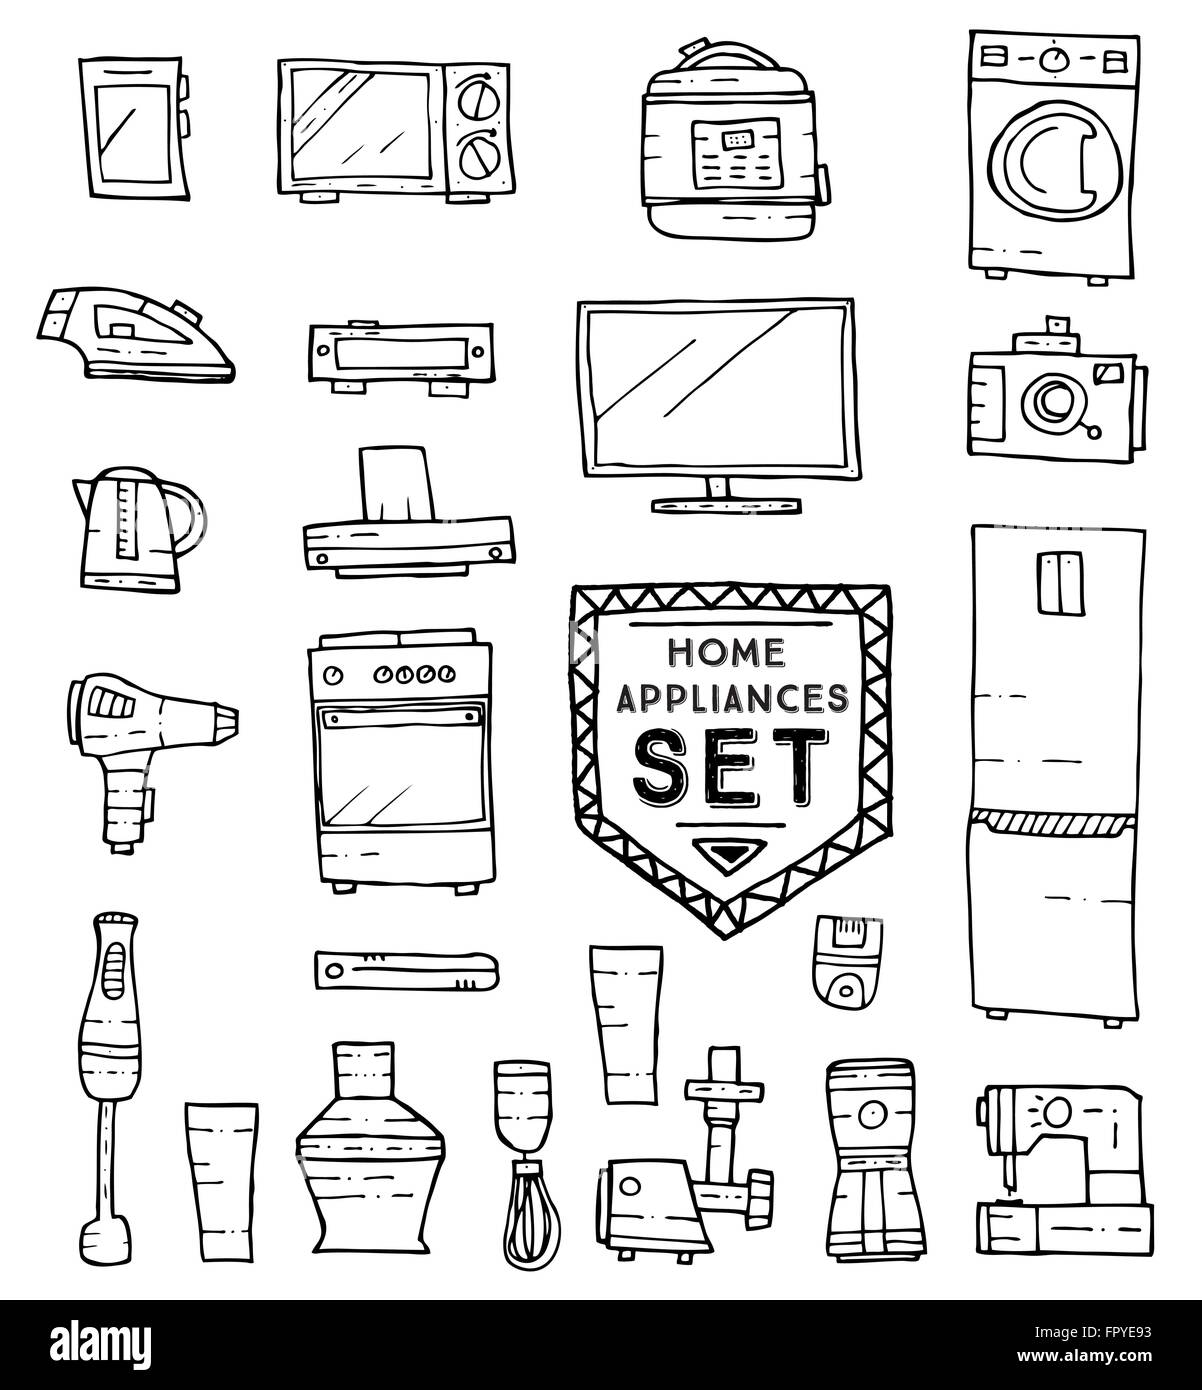 Haushaltsgeräte doodle Set. Vektor-Illustration. Haushaltsgeräte und Einrichtungen isoliert auf weißem Hintergrund. Stock Vektor